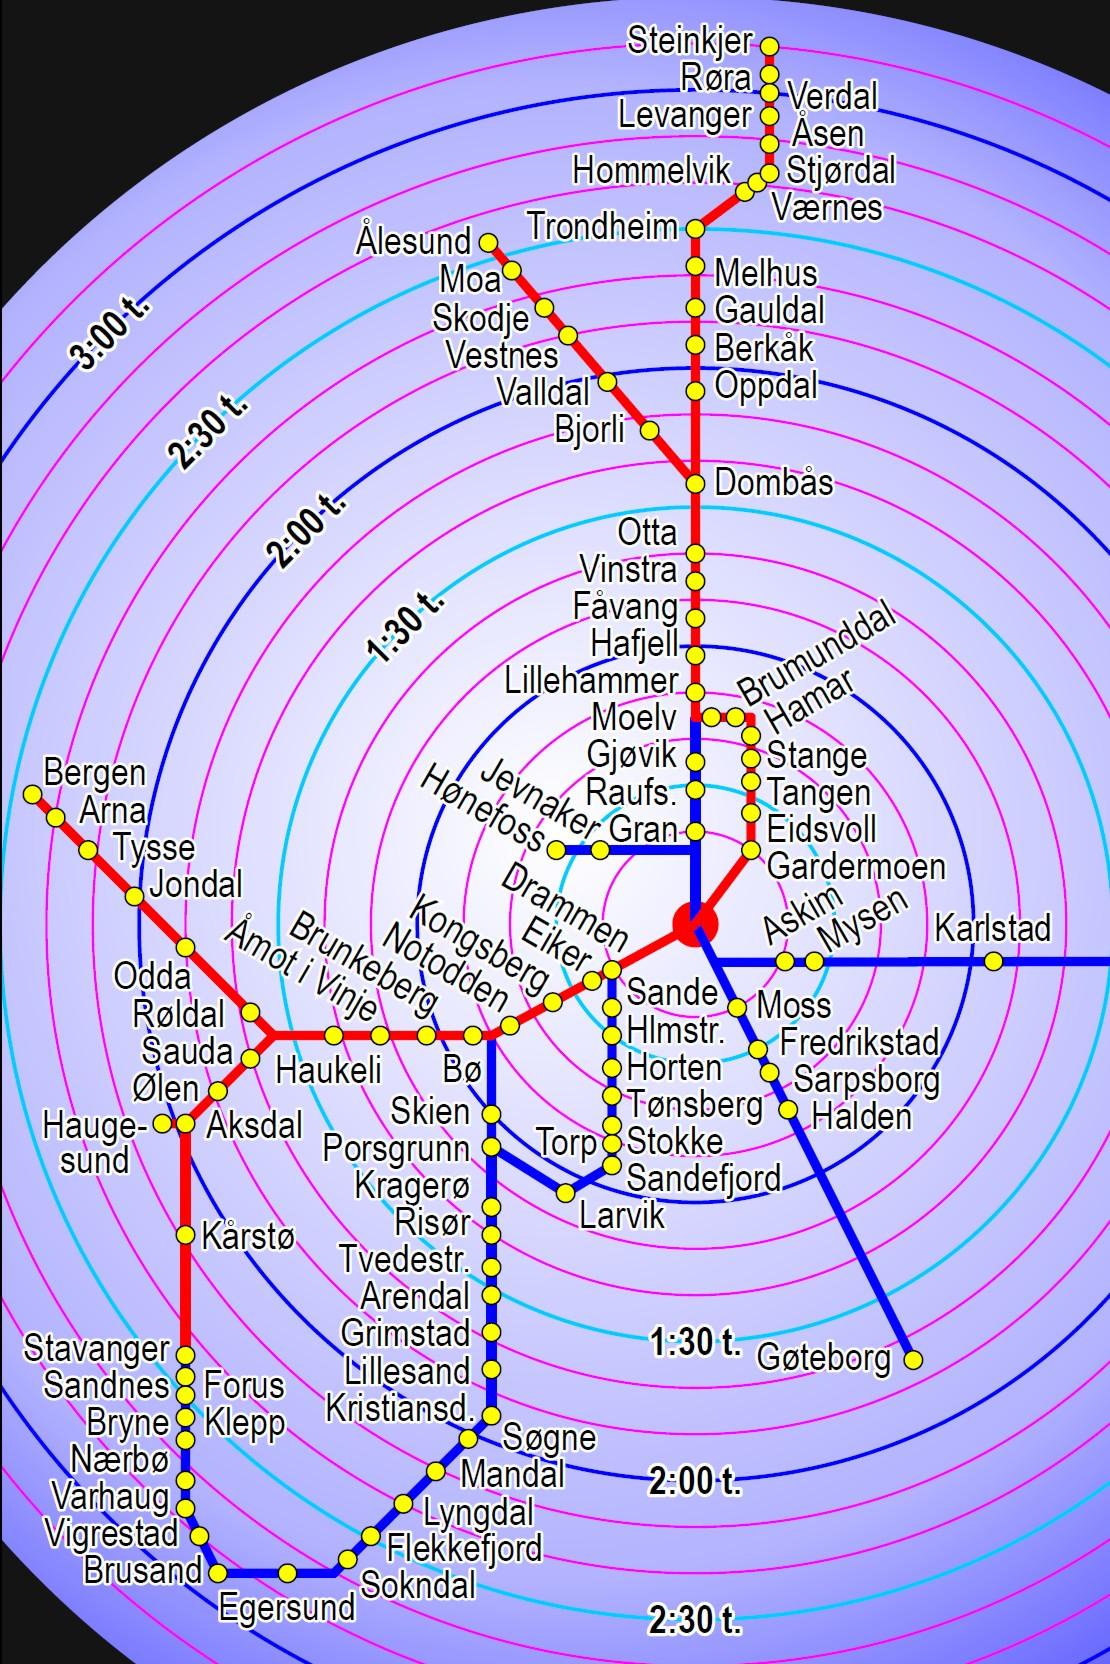 Deutsche Bahn: Oslo Trondheim via Gudbrandsdalen med 18 stasjoner, forgreining til Ålesund ved Dombås, via både Gjøvik og Hamar.